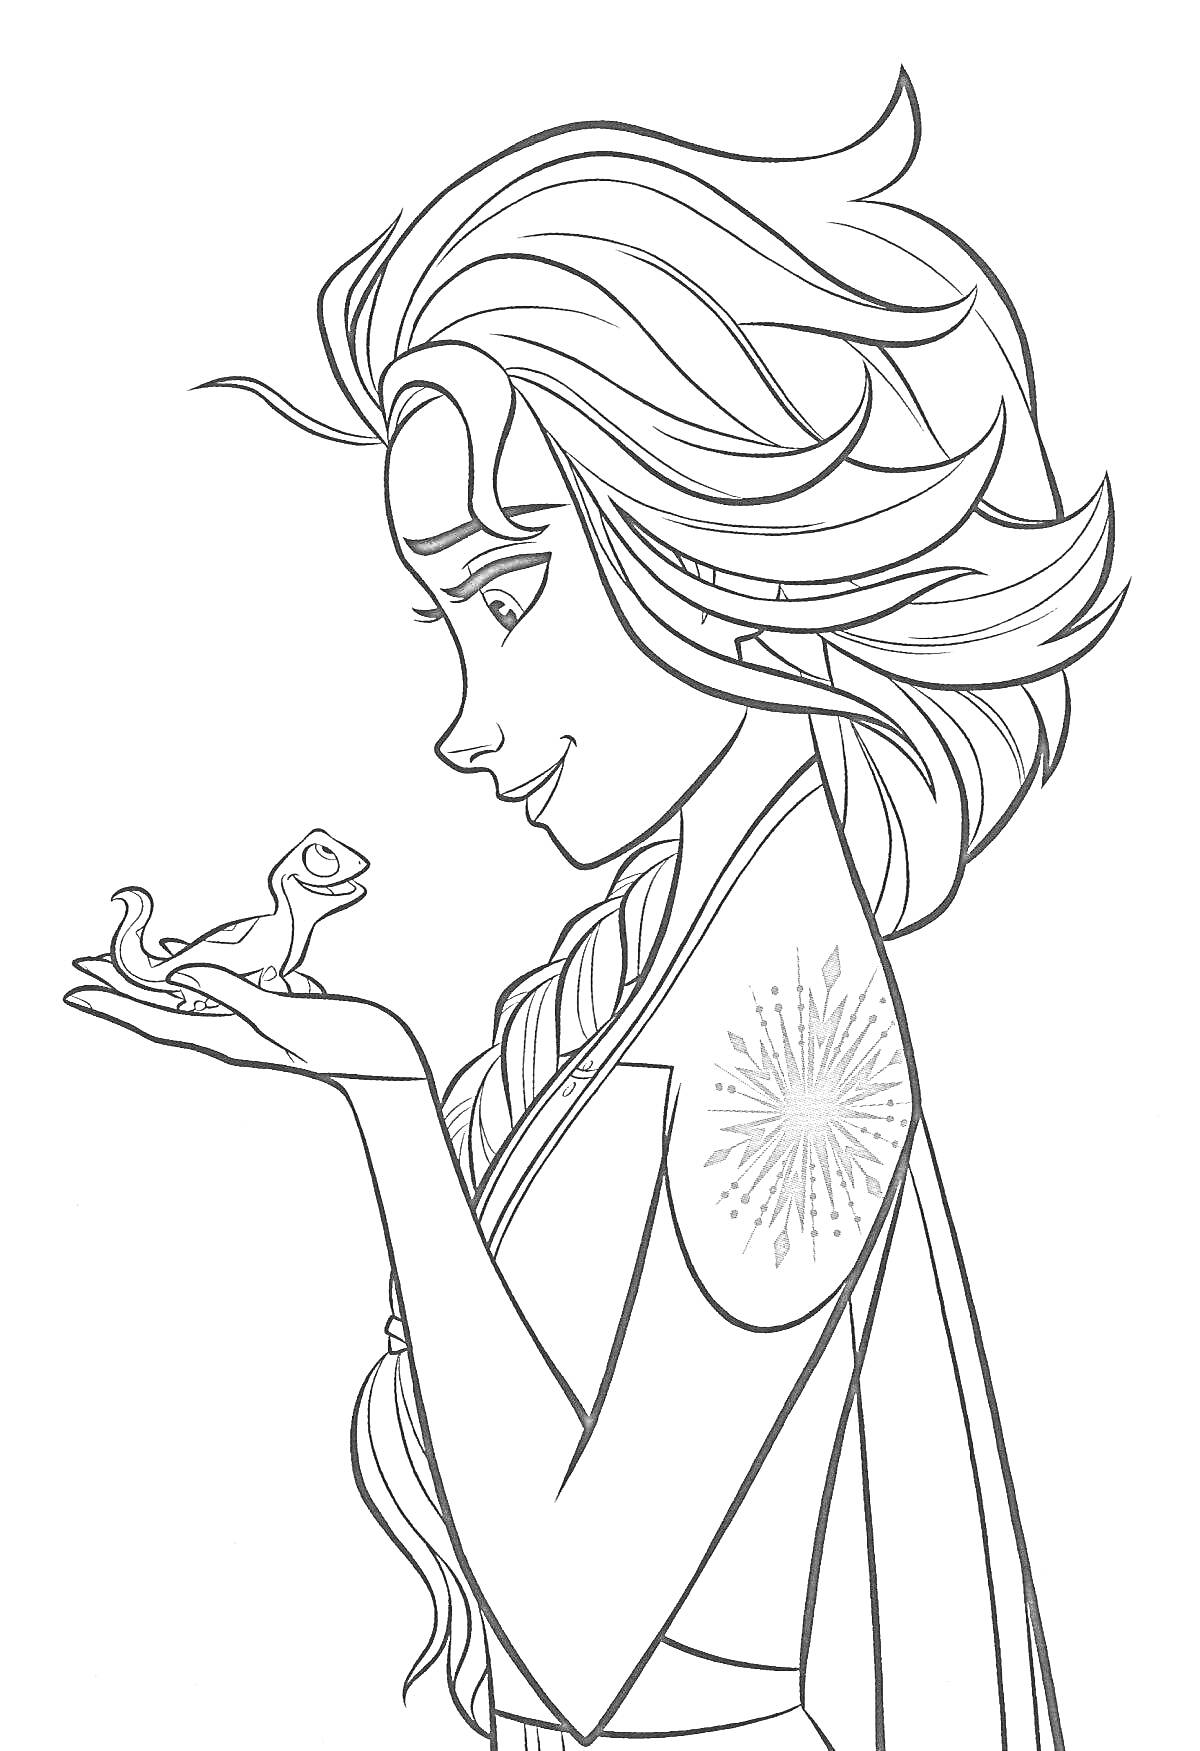 Девушка с длинными волосами и волшебной снежинкой на плече держит саламандру на ладони